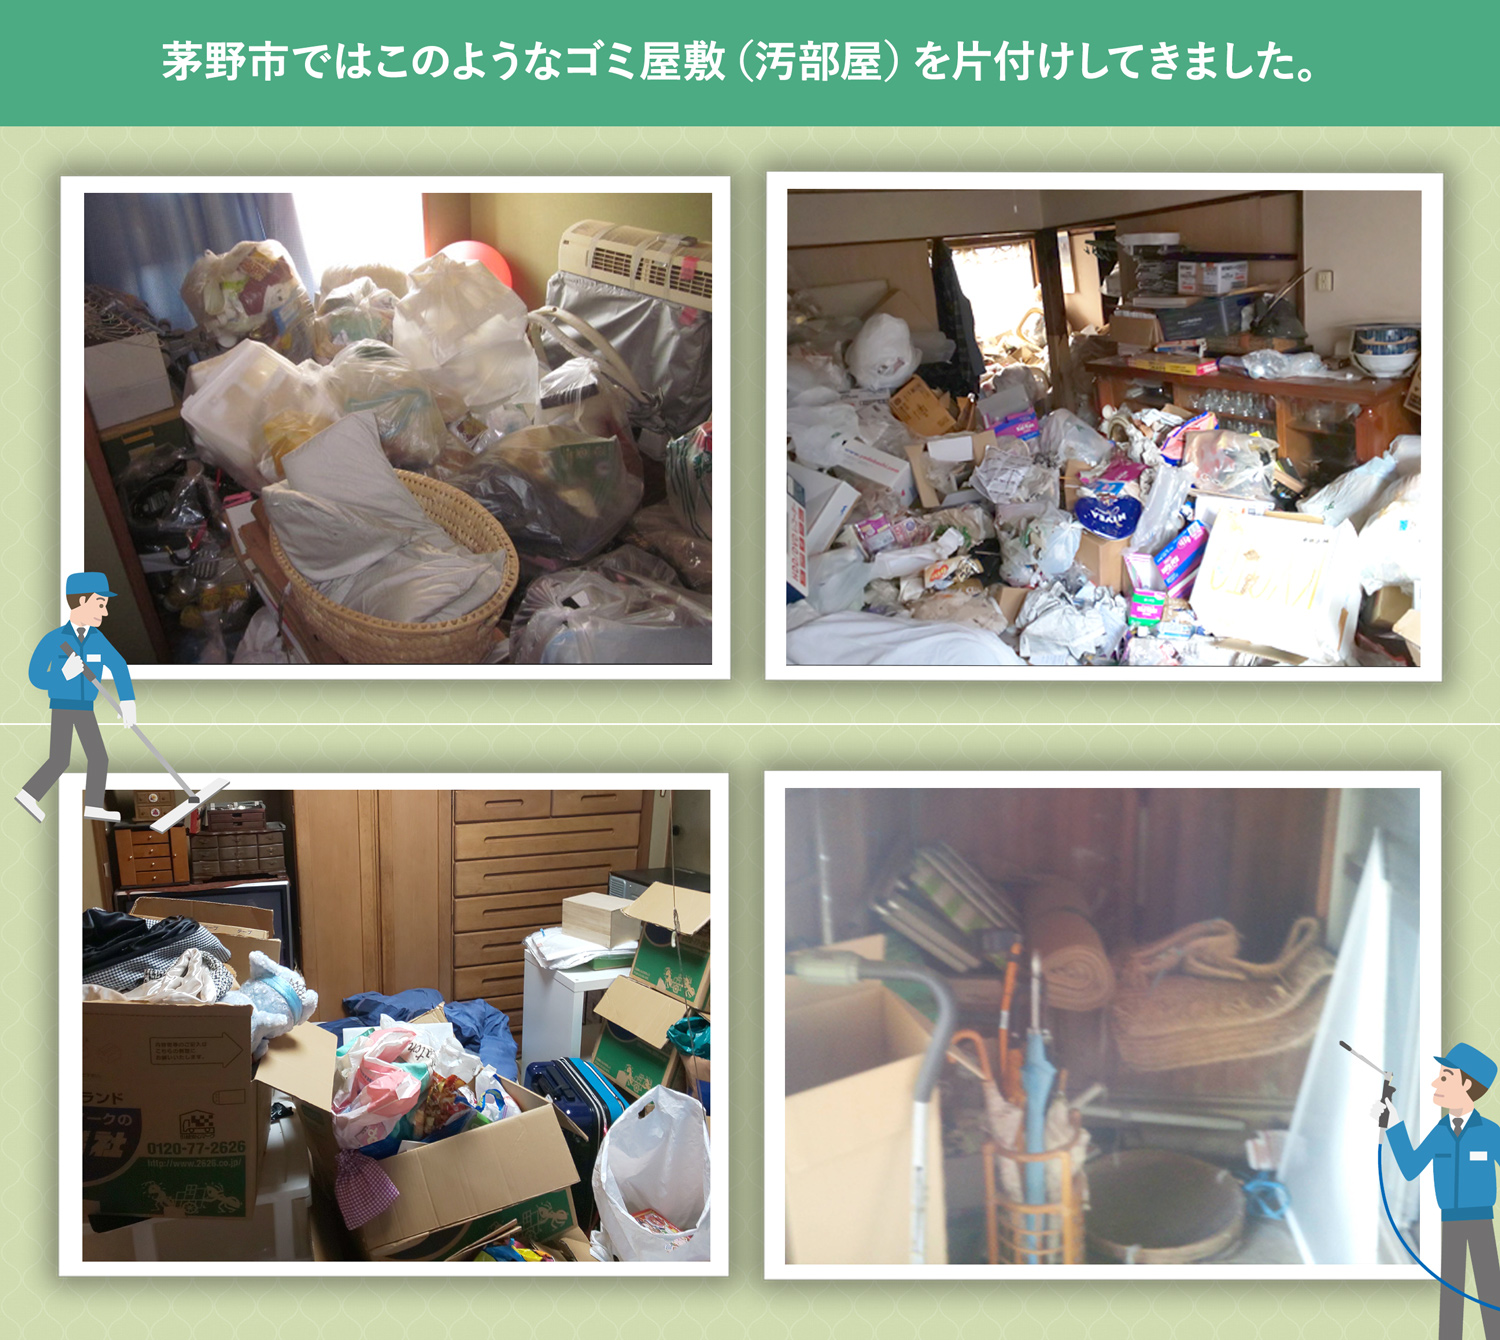 茅野市で行ったで行ったごみ屋敷・汚部屋の片付けの一例